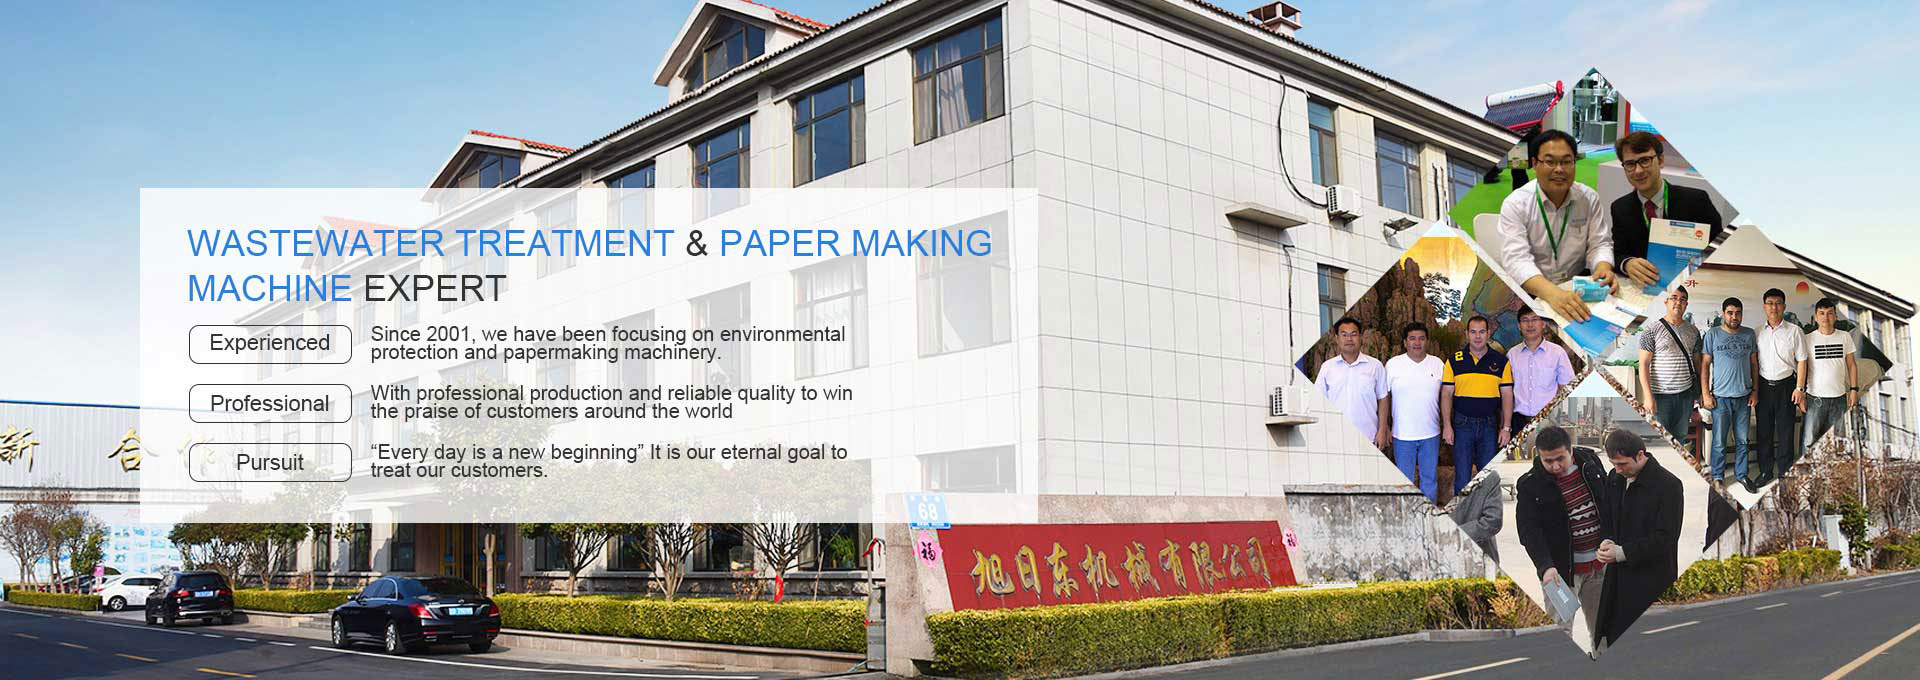 Equipos para tratamiento de aguas residuales y fabricación de papel.